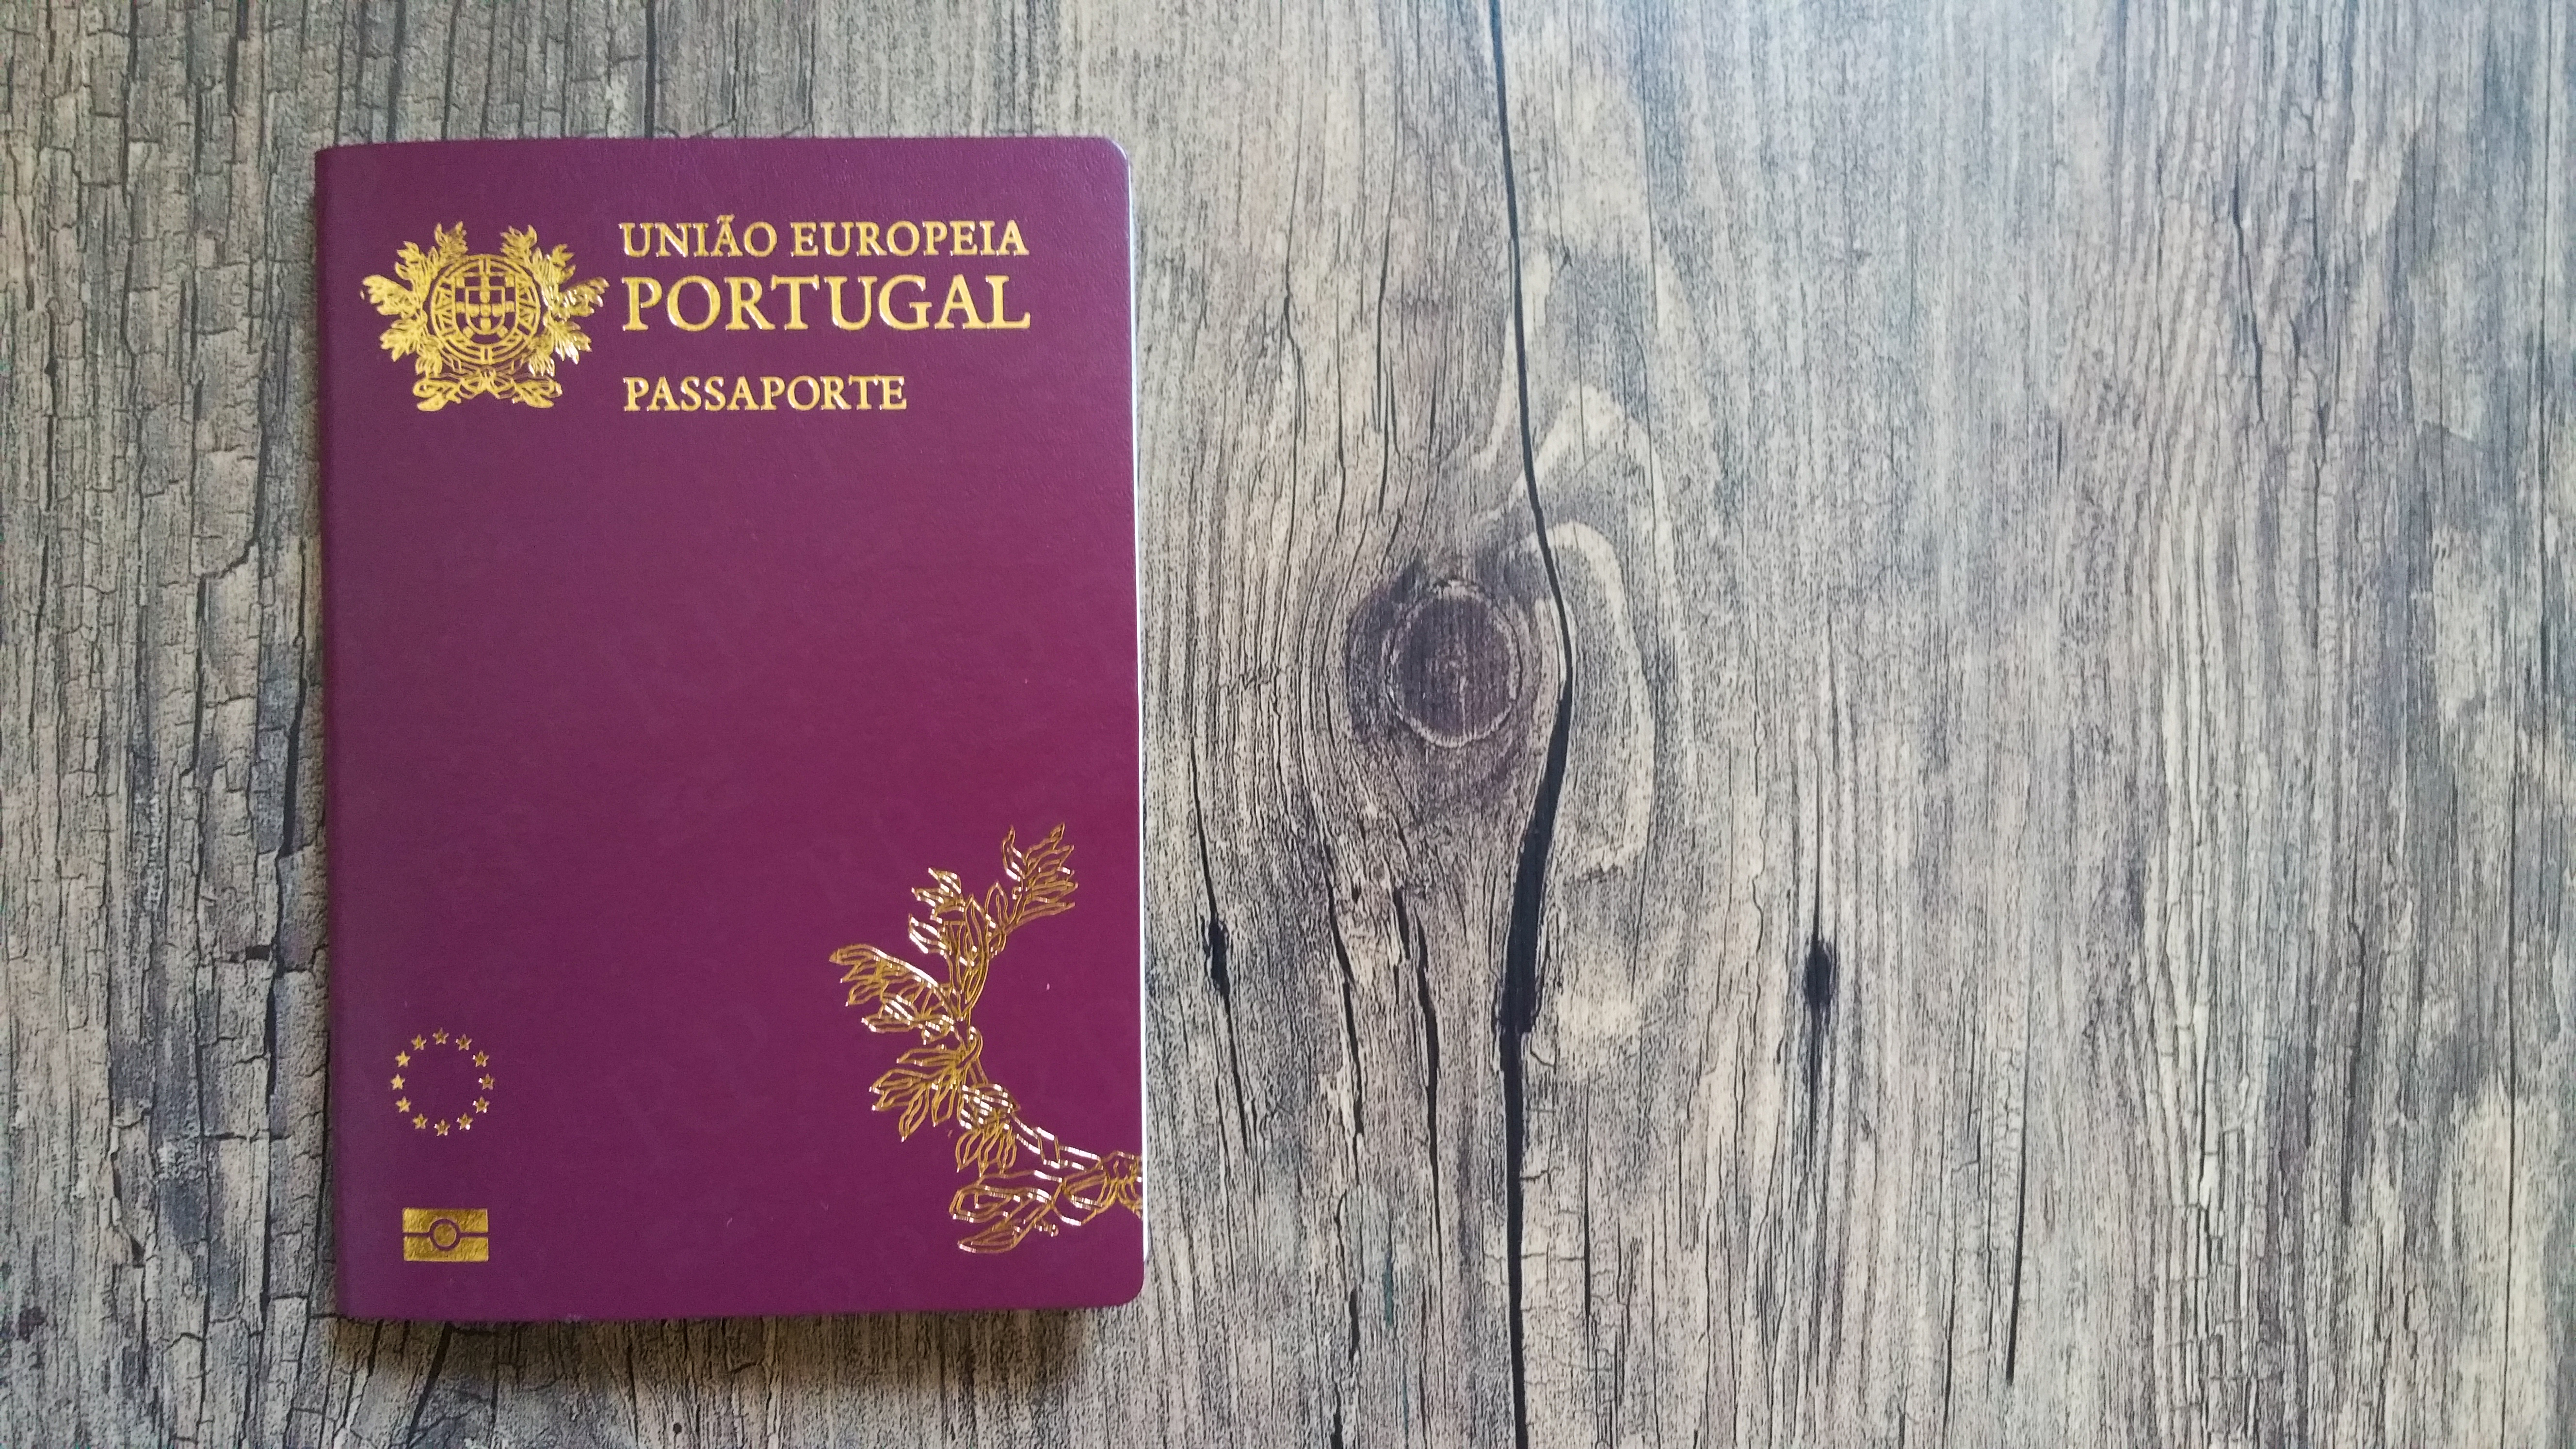 Португальский паспорт, который могут получить иностранцы